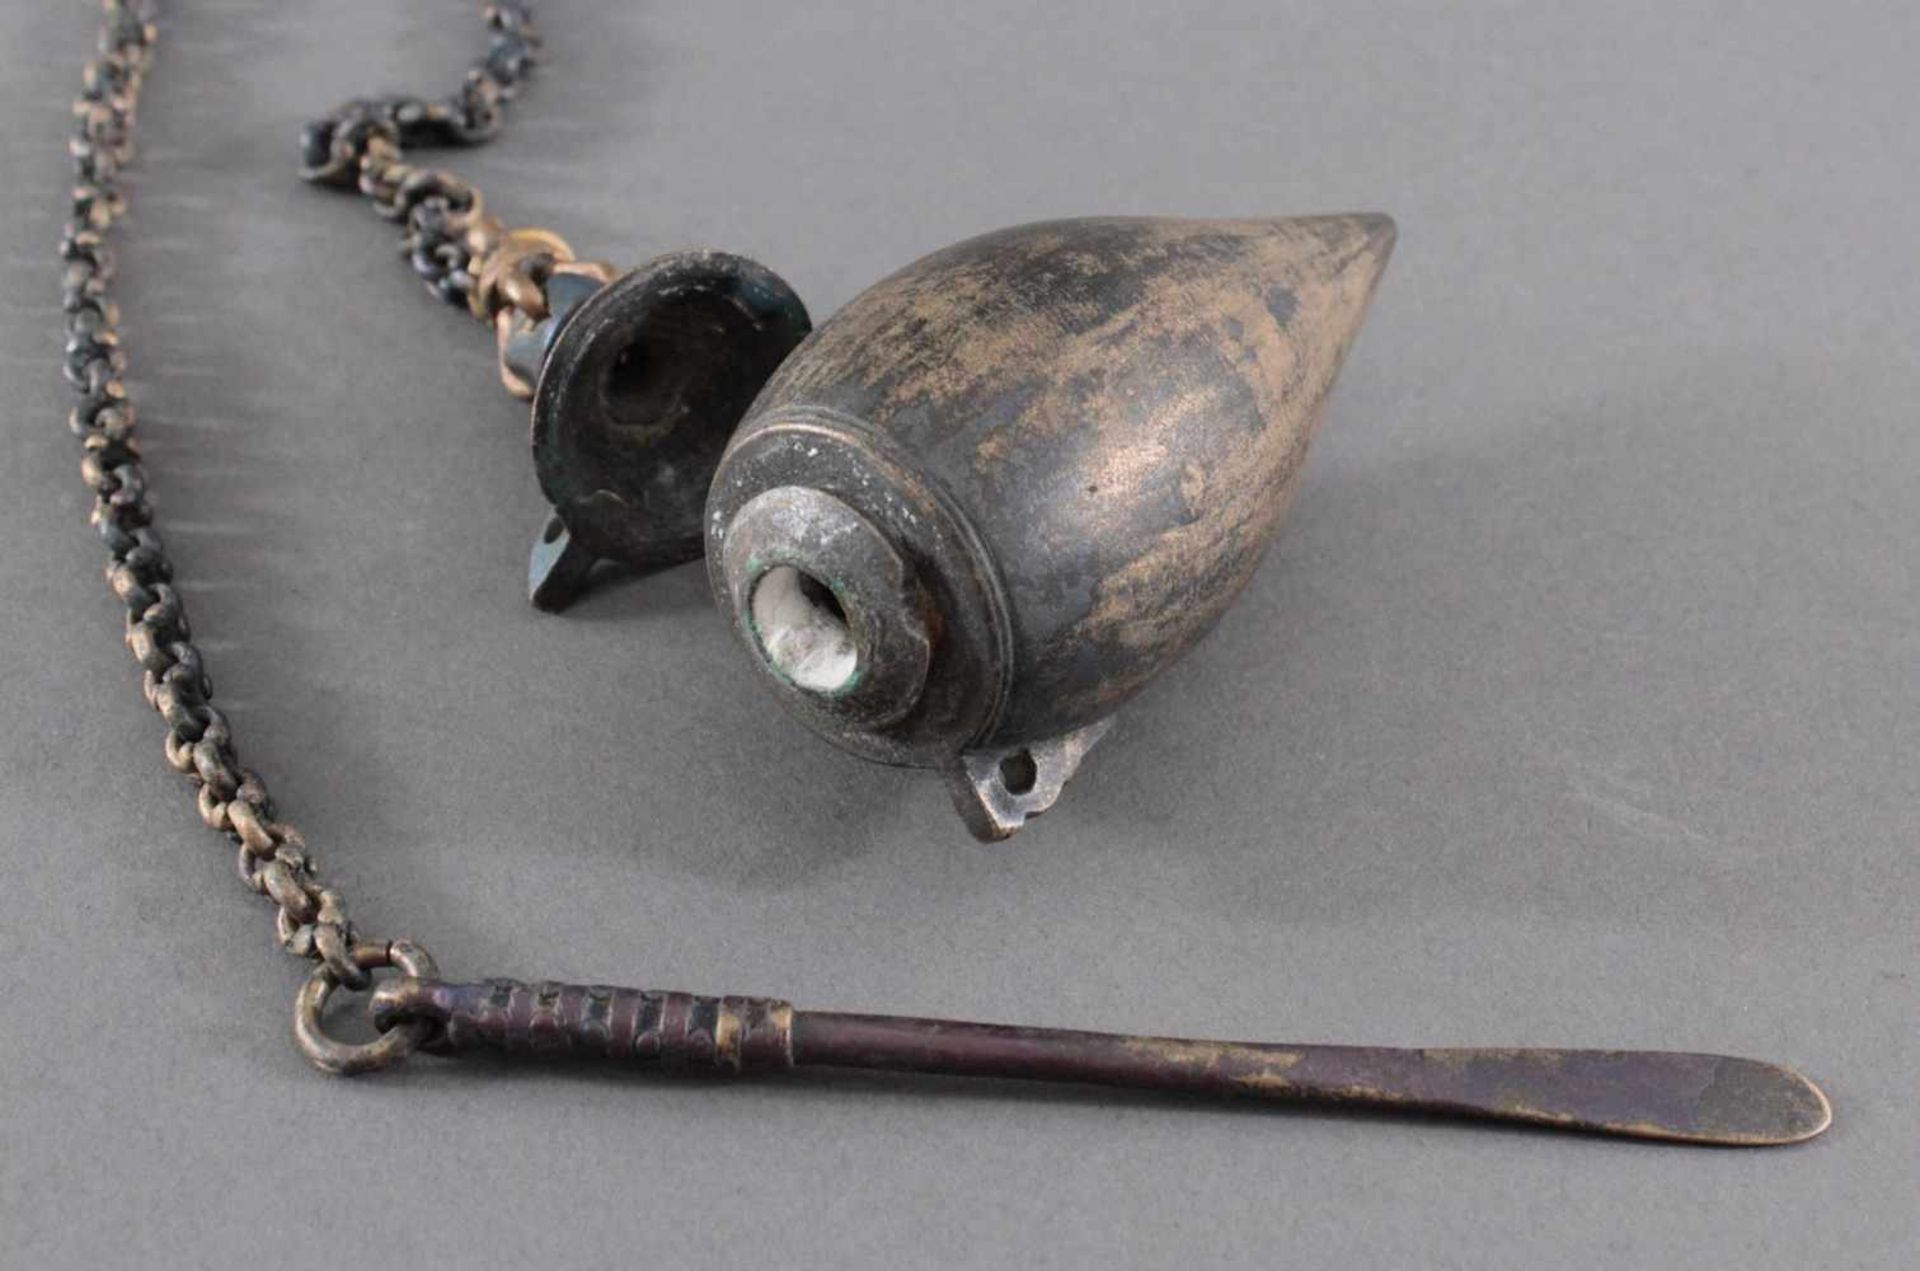 Bettelnuss Kalk-Behälter aus Kupfer/Messingmit Tragekette und Löffelchen, Gesamtlänge ca. 75 cm - Image 2 of 2